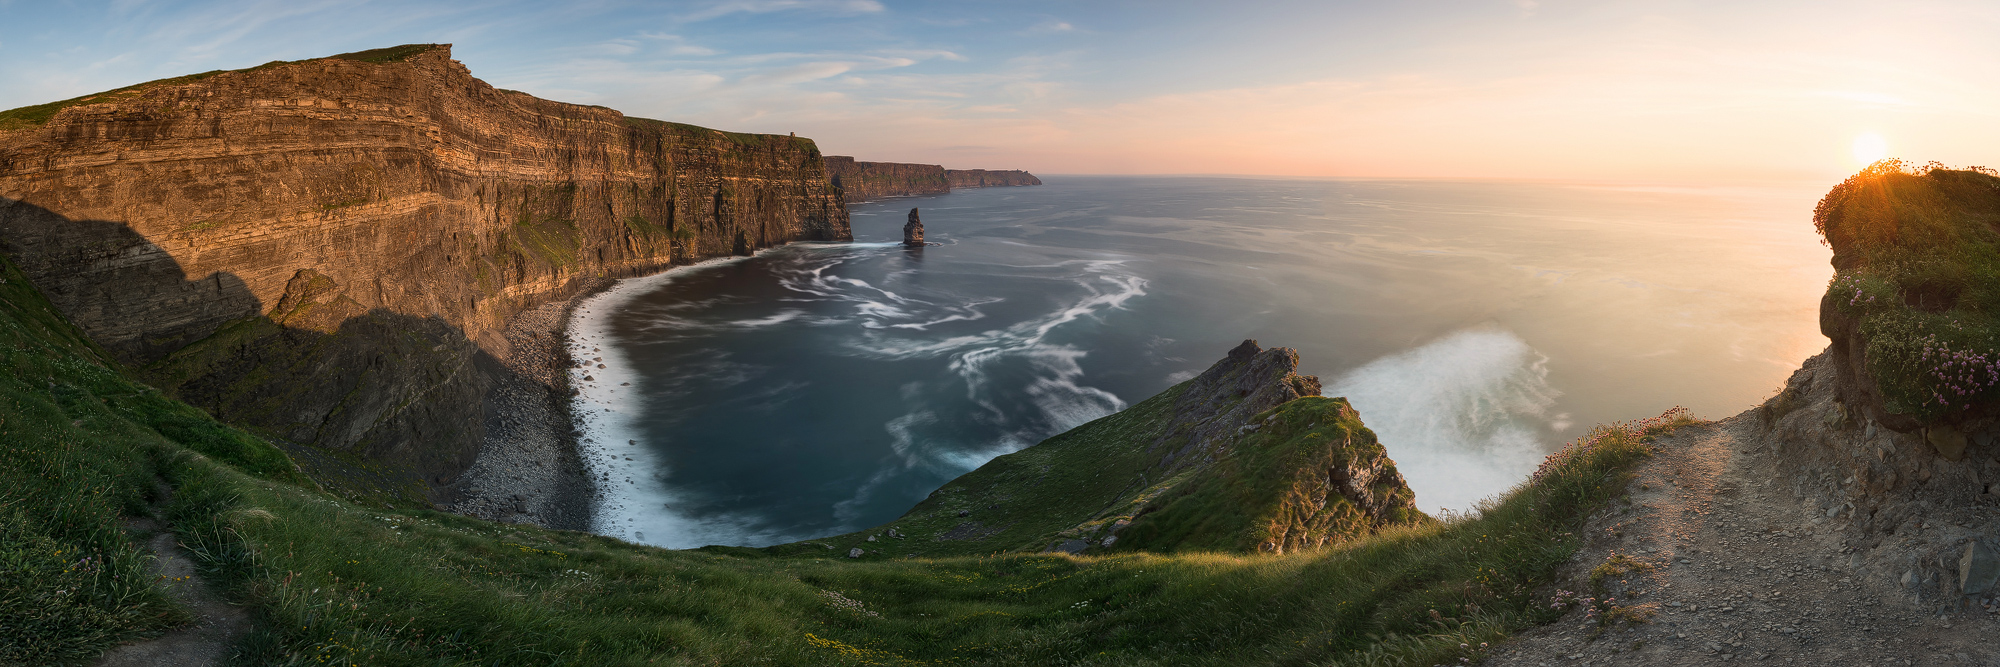 Irland Fotoreise, steilen Felsklippen im Westen und den fjordähnlichen Buchten im Südwesten erinnert